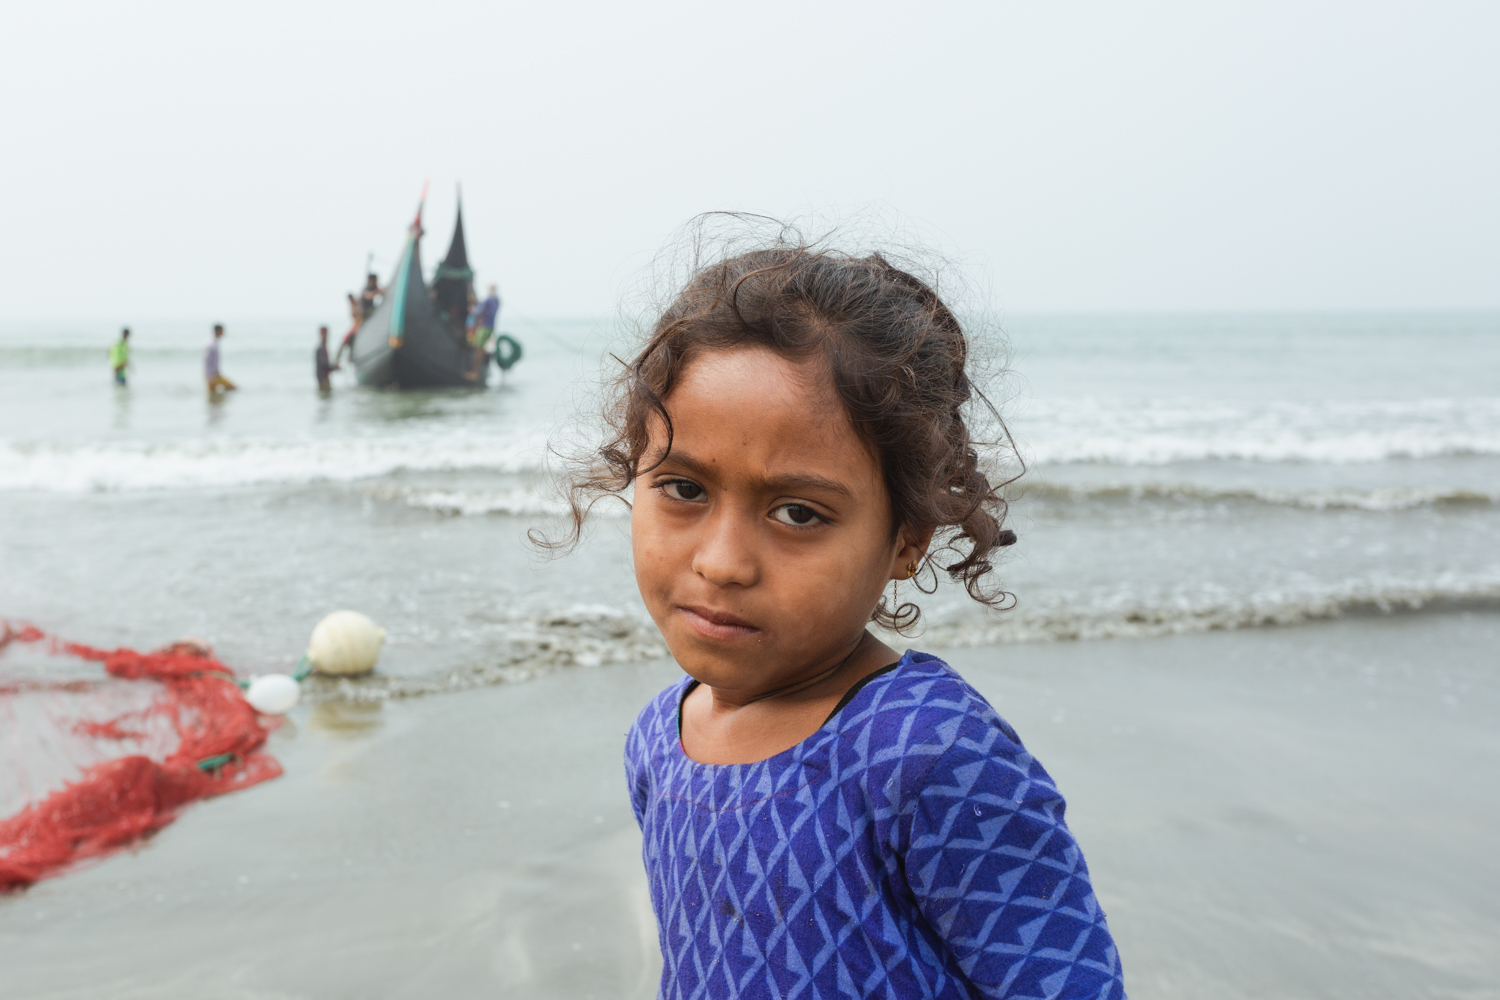 Young girl at the Bay of Bengal Fishing Village, Cox’s Bazar Bangladesh